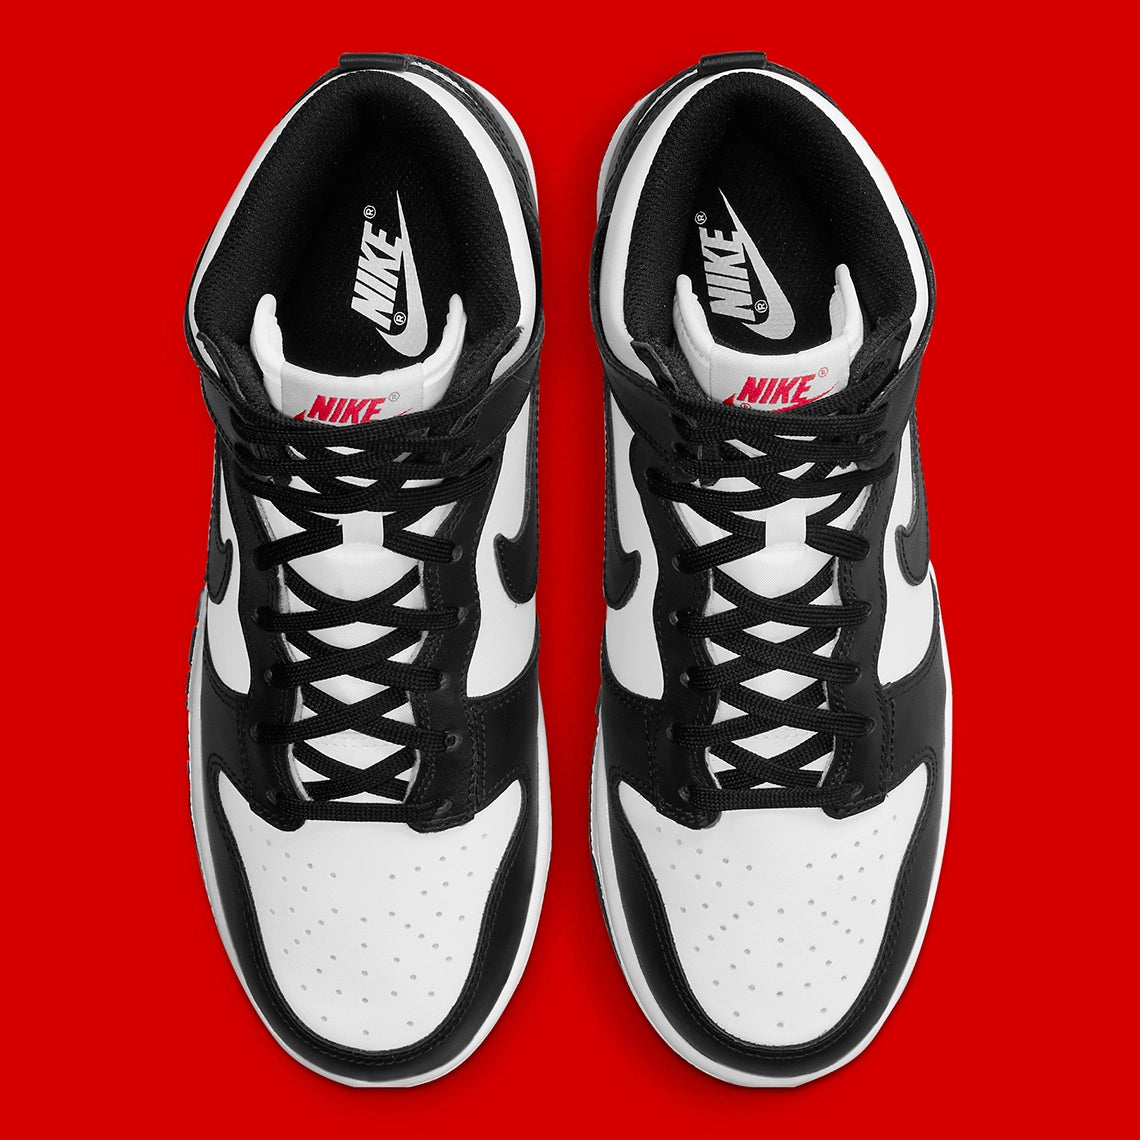 Nike dunk High "Black And White"